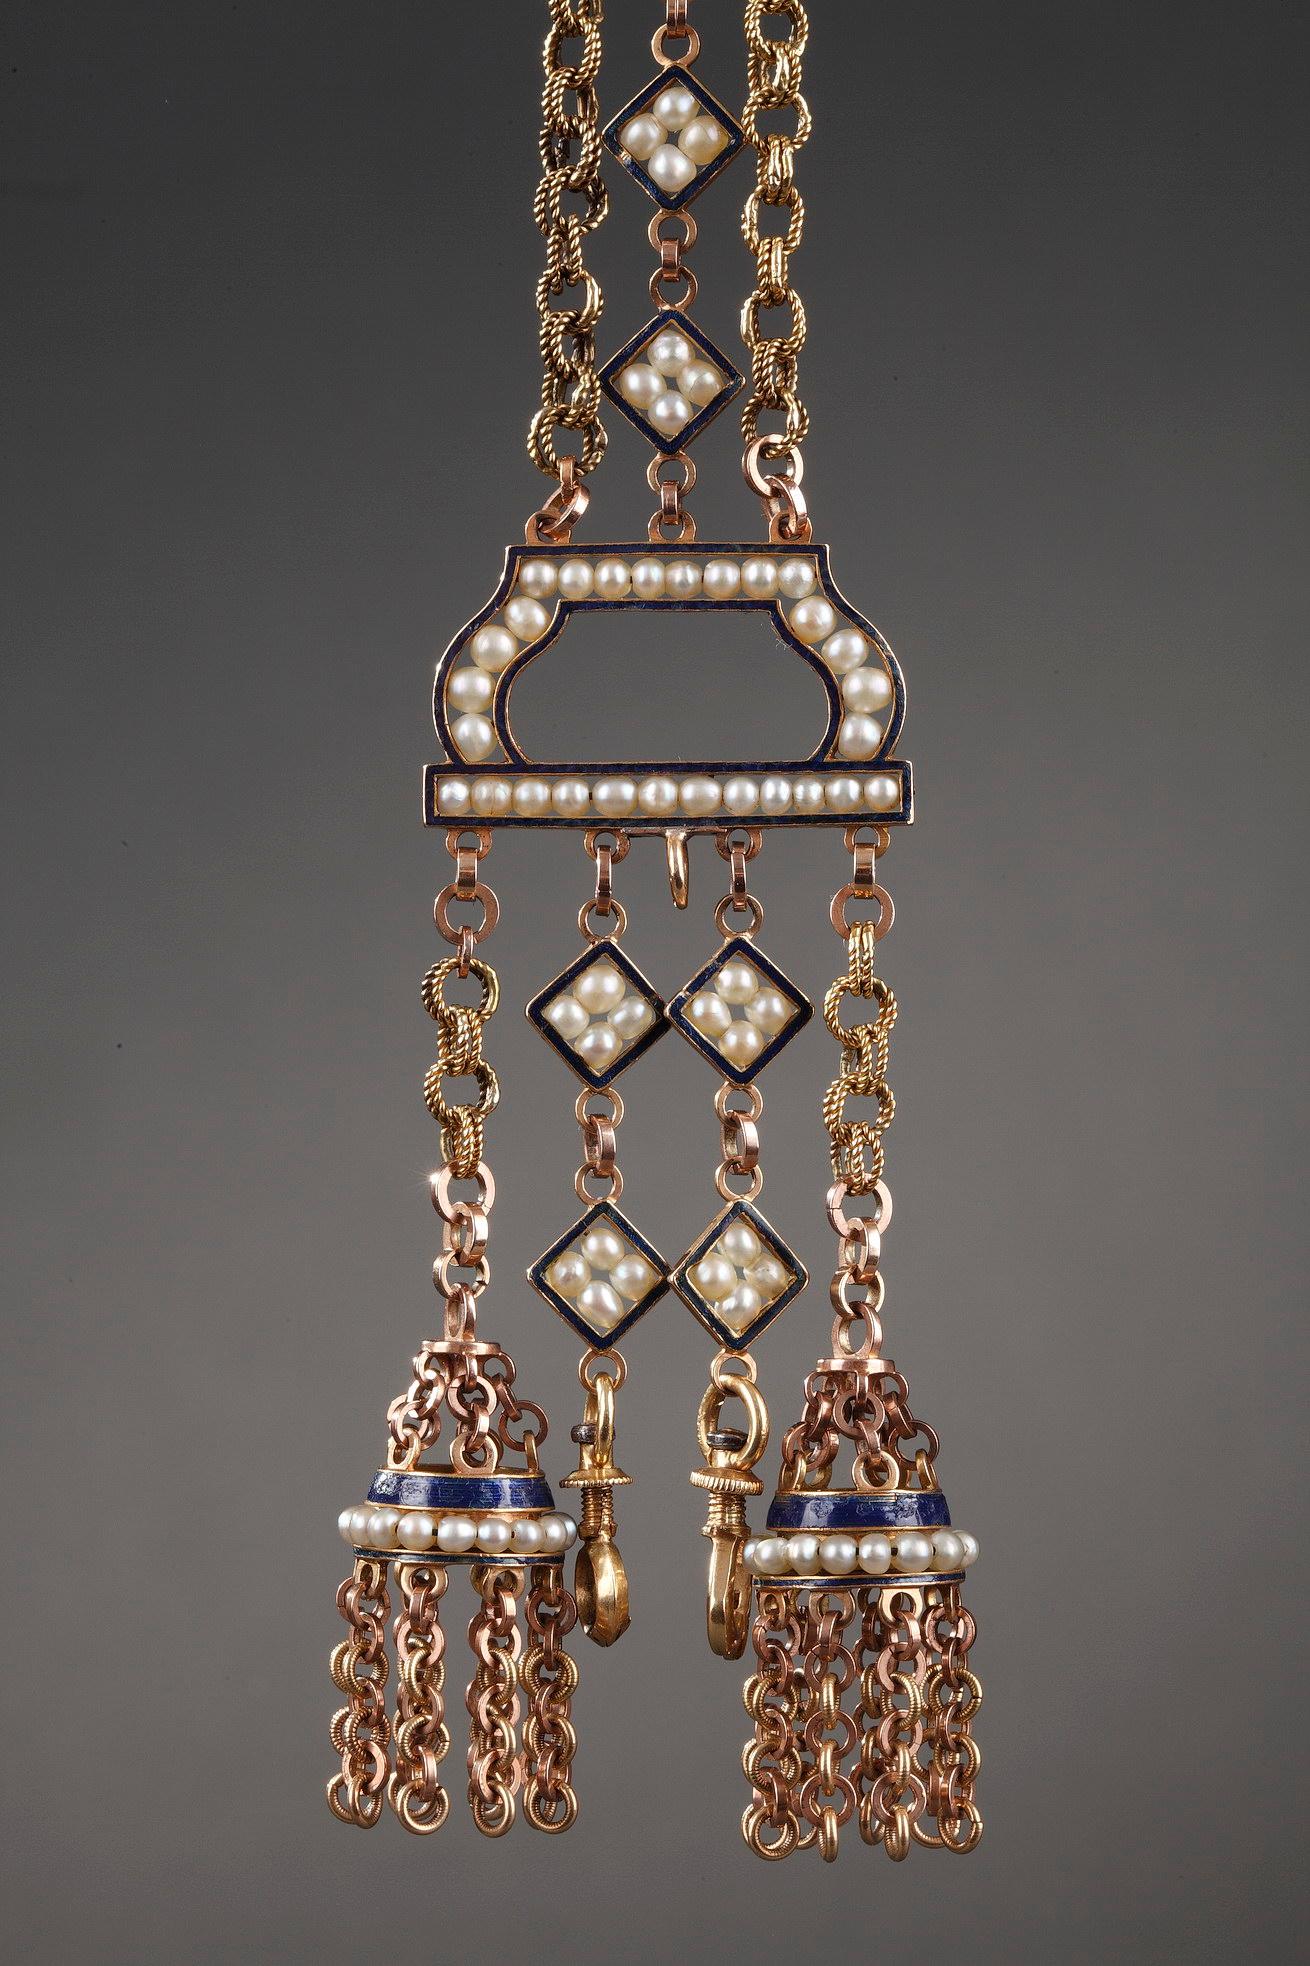 Châtelaine composée d'or recouvert d'émail bleu royal. Deux chaînes à maillons en or encadrent une chaîne centrale dont les maillons en forme de diamant sont chacun ornés de quatre perles. Ces trois chaînes sont attachées à un demi-cercle émaillé